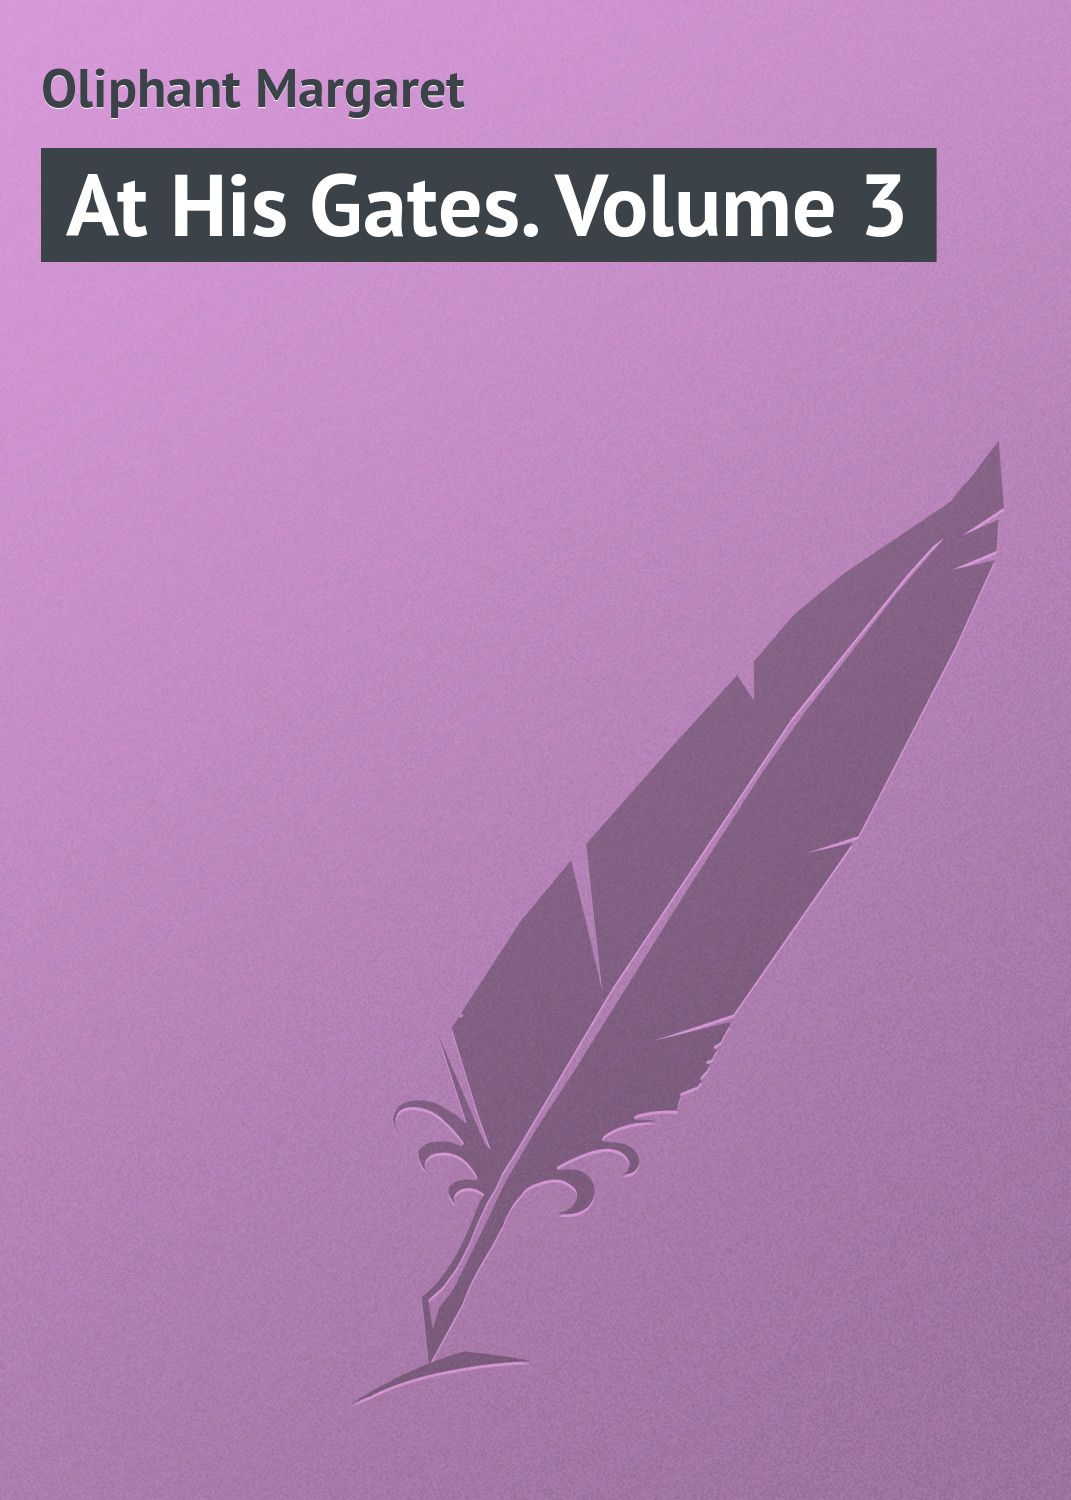 Книга At His Gates. Volume 3 из серии , созданная Margaret Oliphant, может относится к жанру Зарубежная классика. Стоимость электронной книги At His Gates. Volume 3 с идентификатором 23164723 составляет 5.99 руб.